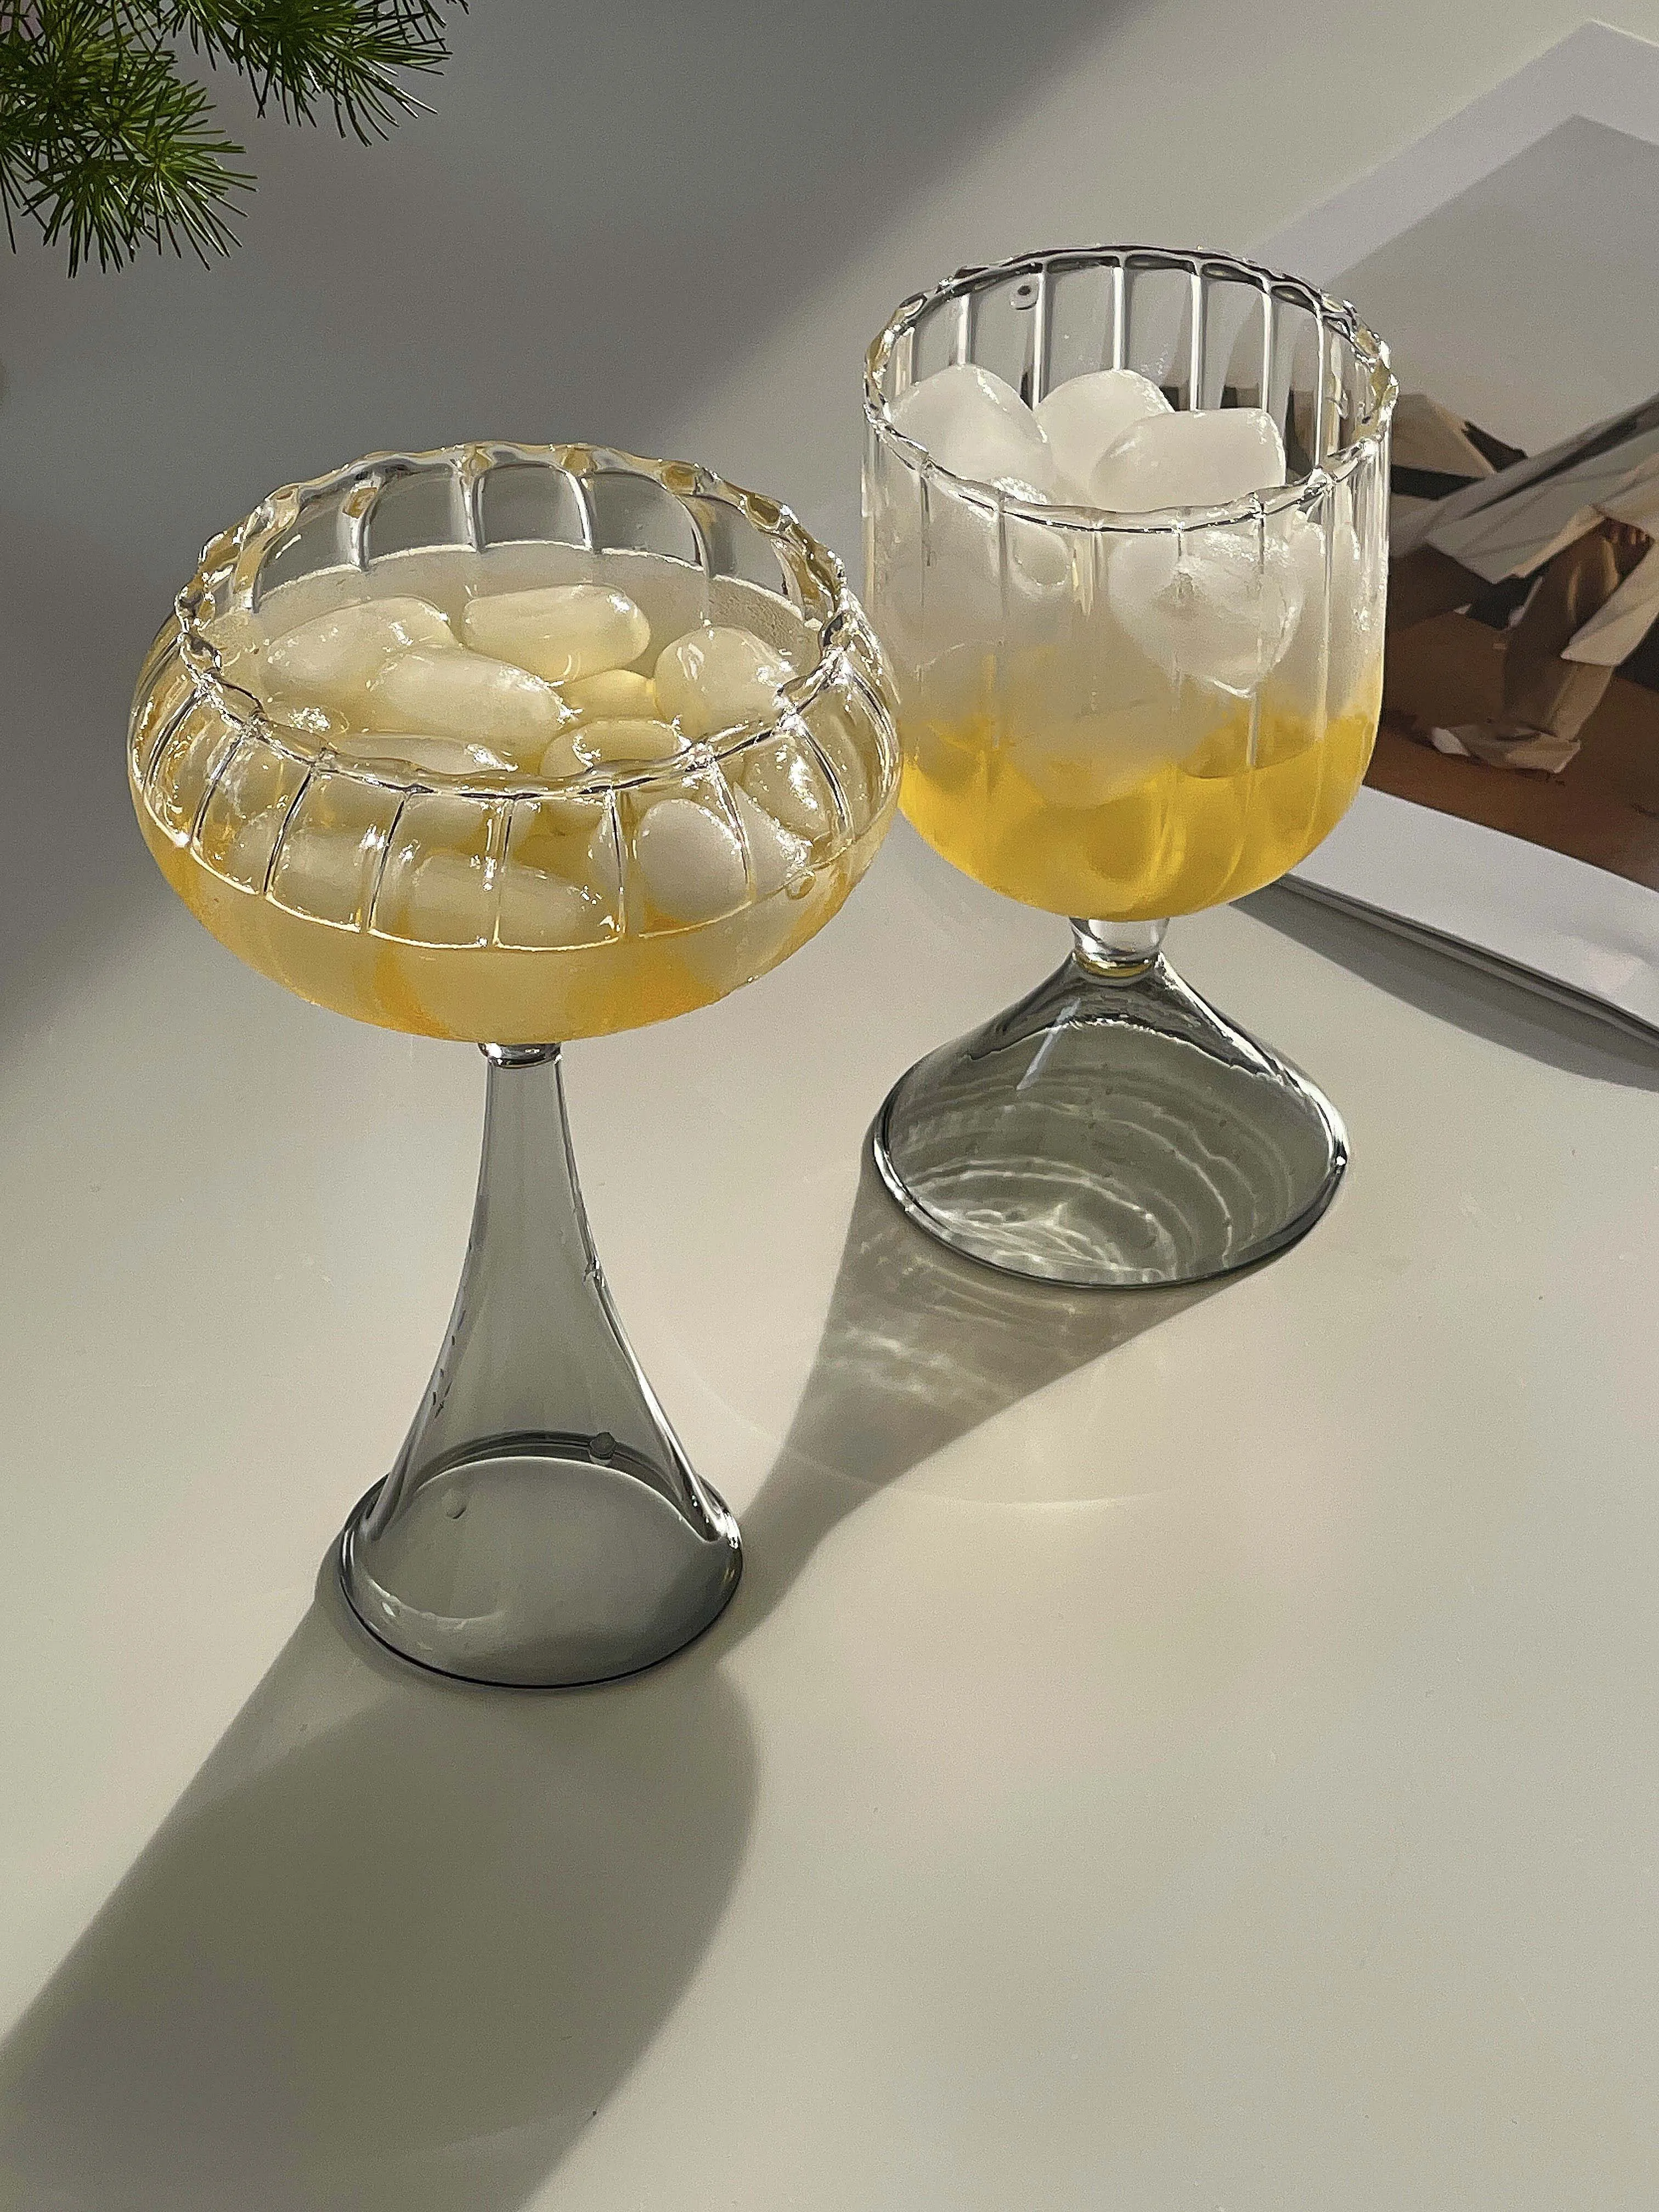 Unique Glassware: Unusual Wine & Drinking Glasses